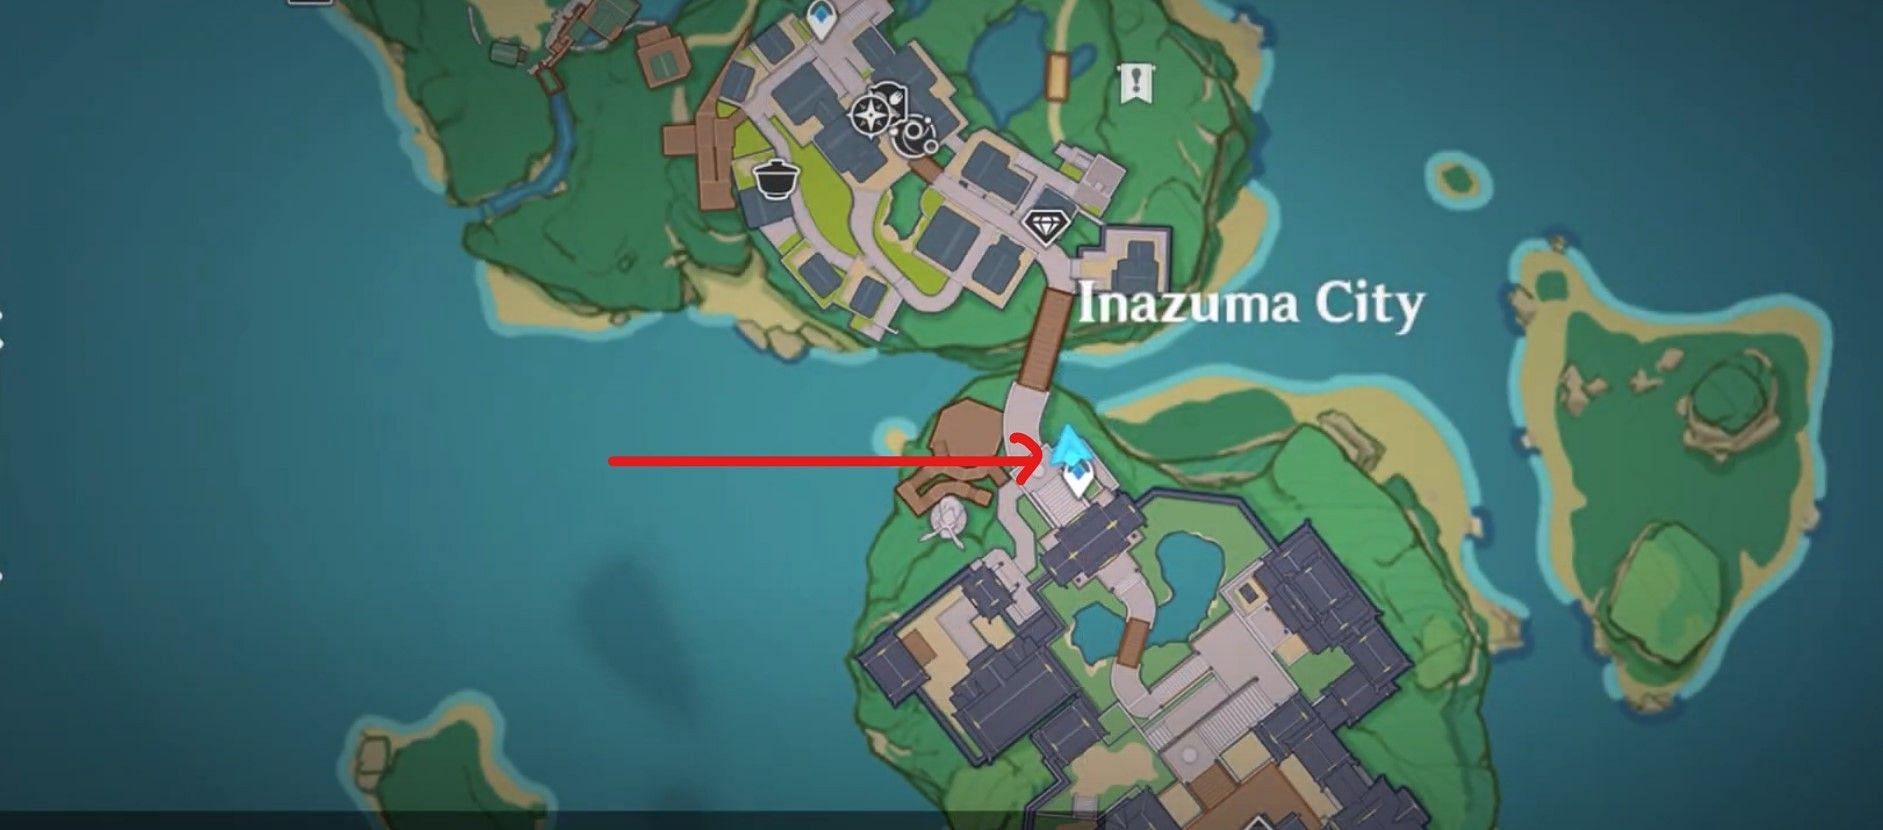 Location of Random event in Inazuma city (Image via Genshin Impact)